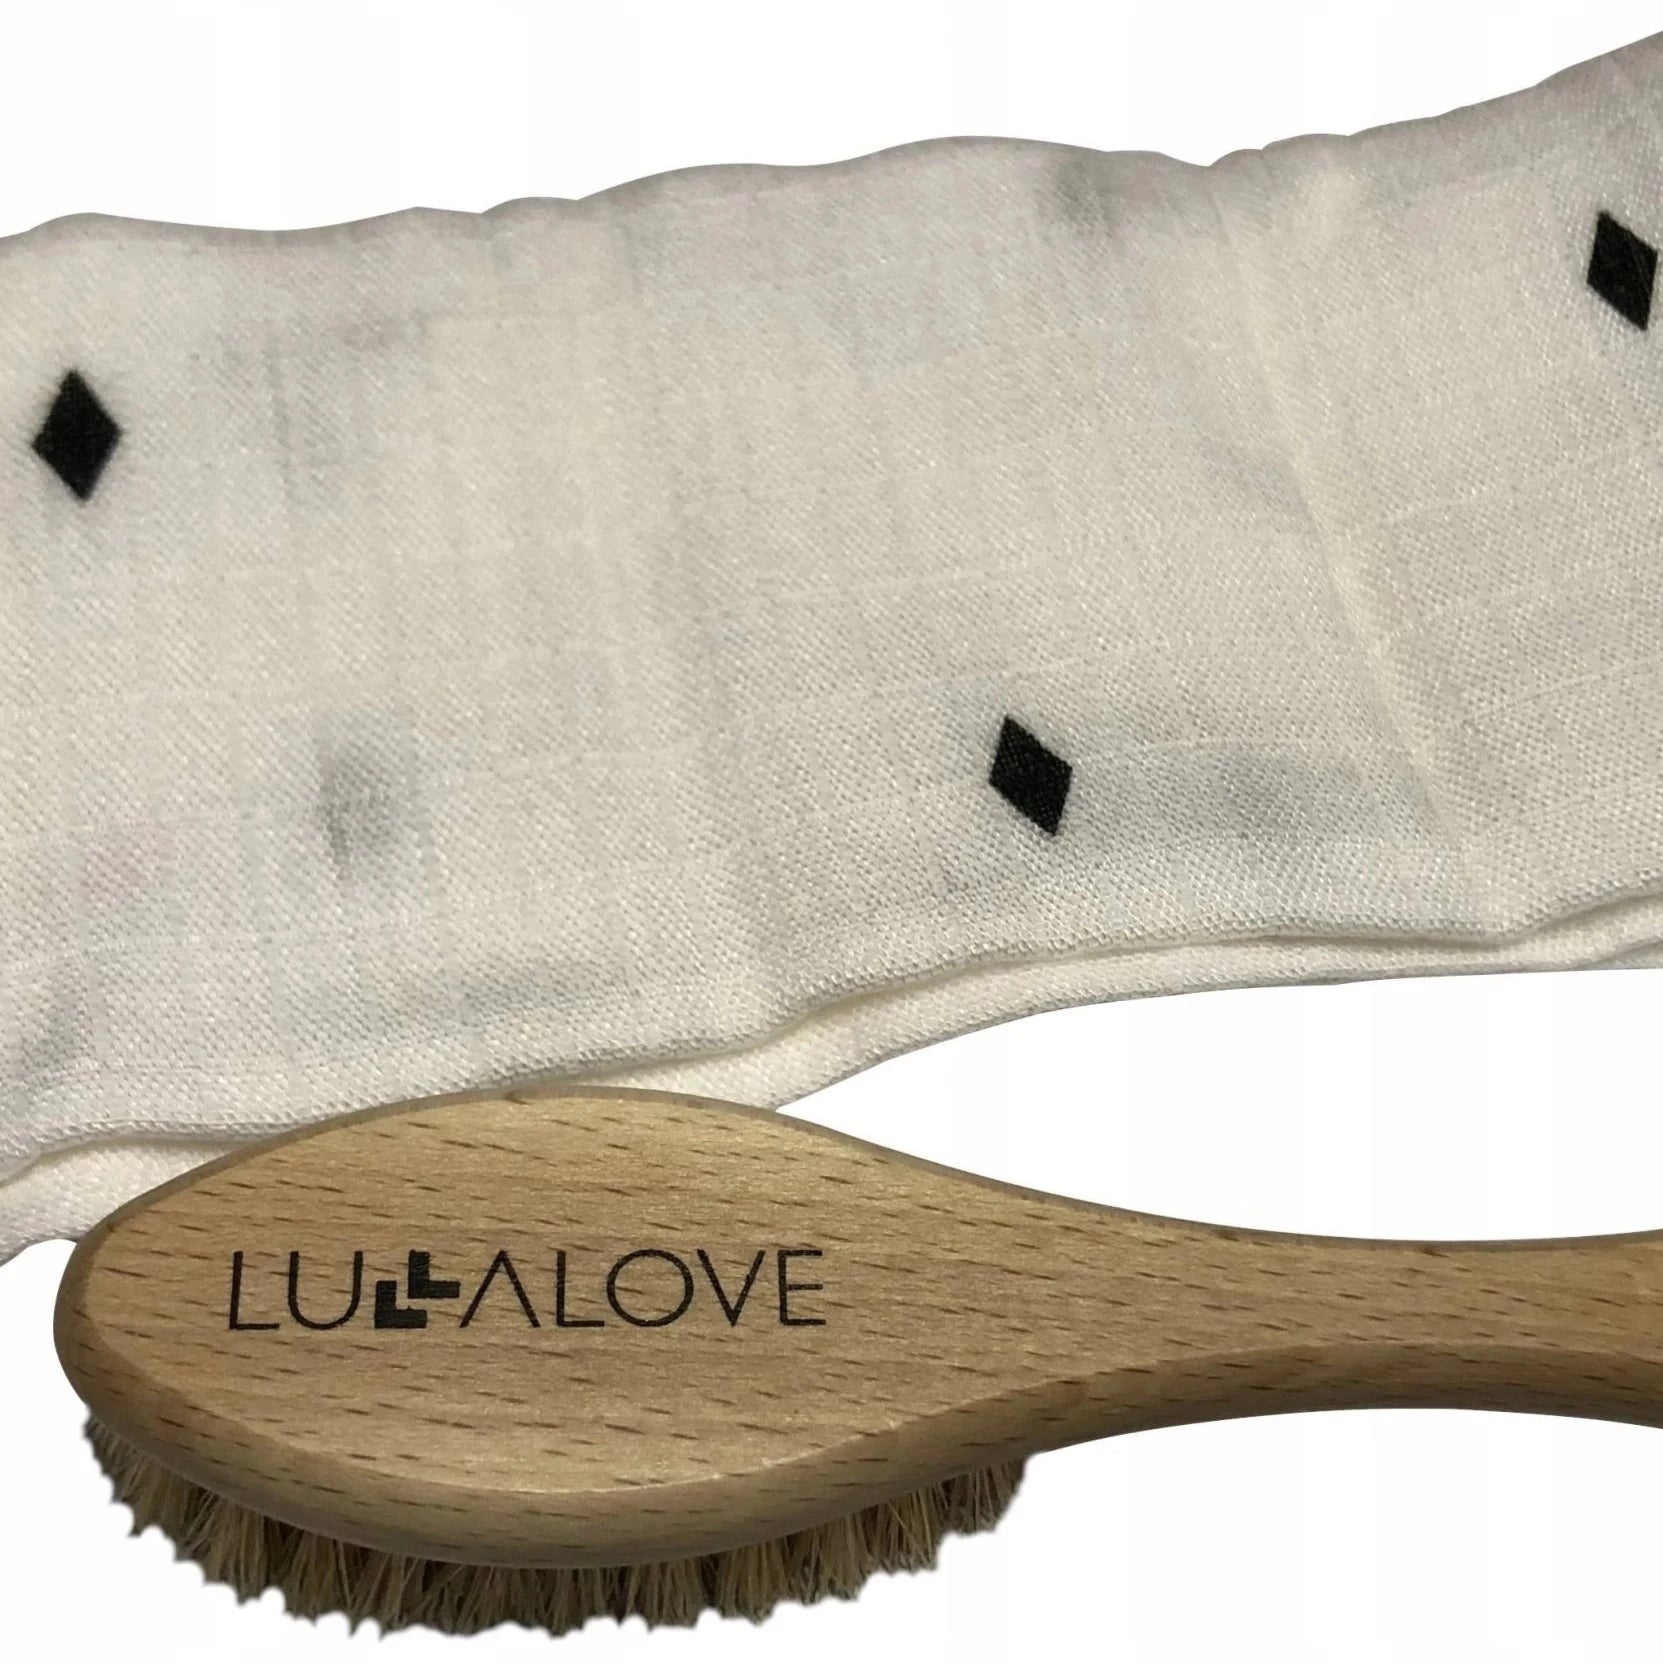 Lullalove: delikatna szczotka z włosia koziego + muślinowa myjka - Noski Noski